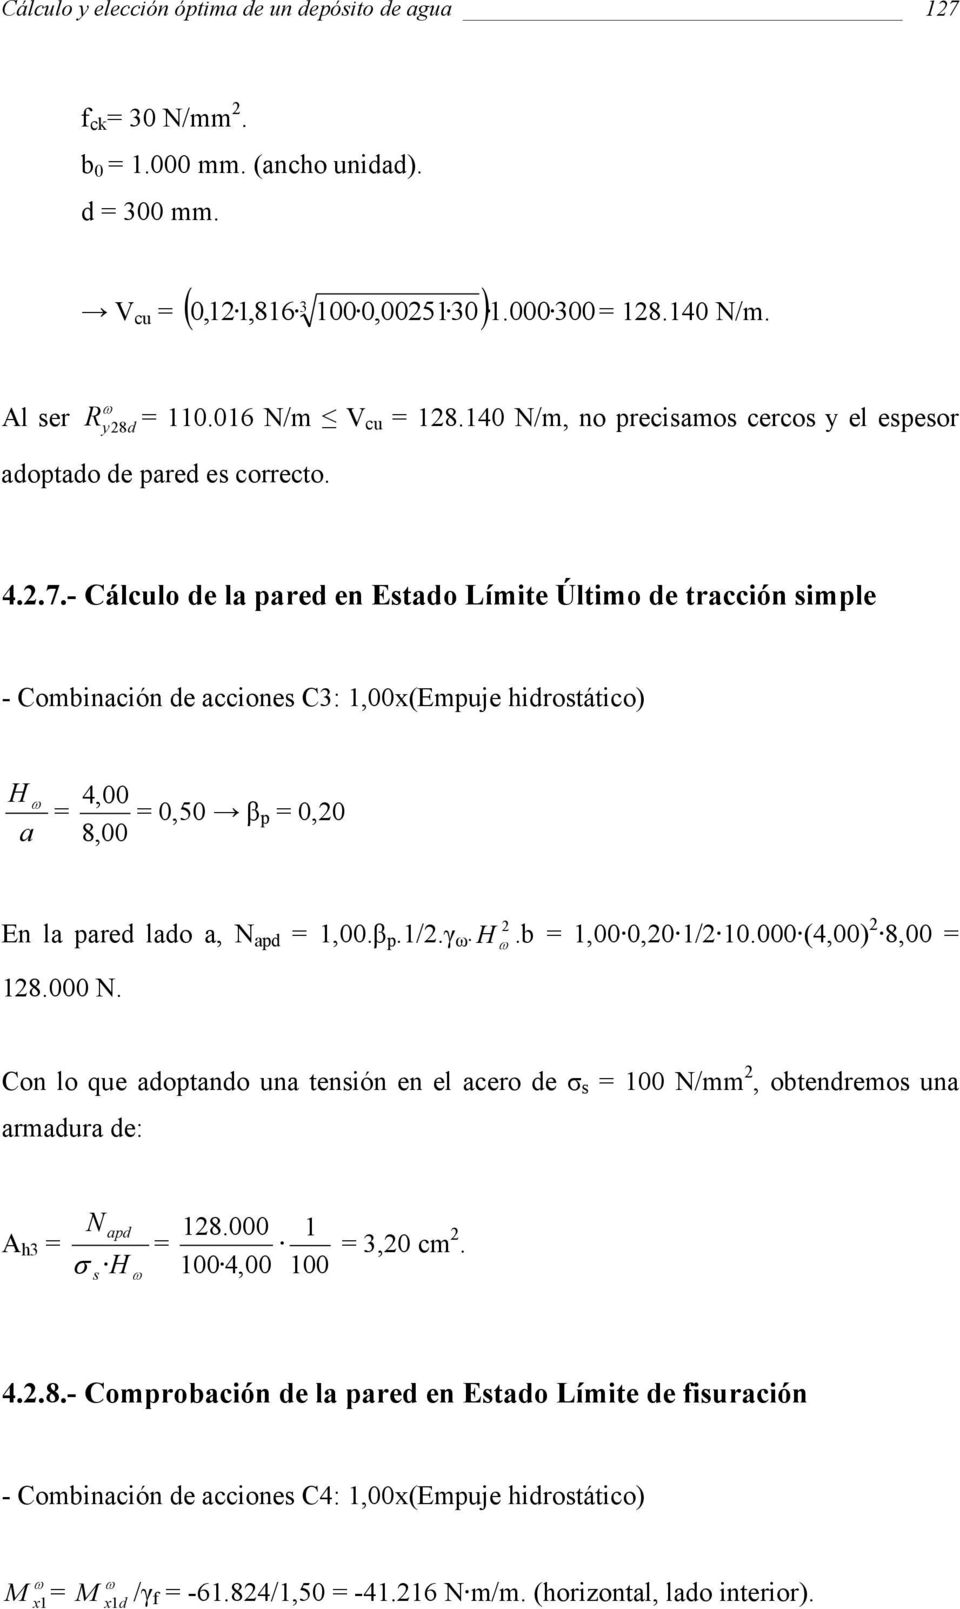 - Cálculo de la pared en Esado Límie Úlimo de racción simple - Combinación de acciones C3: 100x(Empuje hidrosáico) H a 400 050 β p 00 800 En la pared lado a N apd 100.β p.1/.γ H.b 100 00 1/ 10.